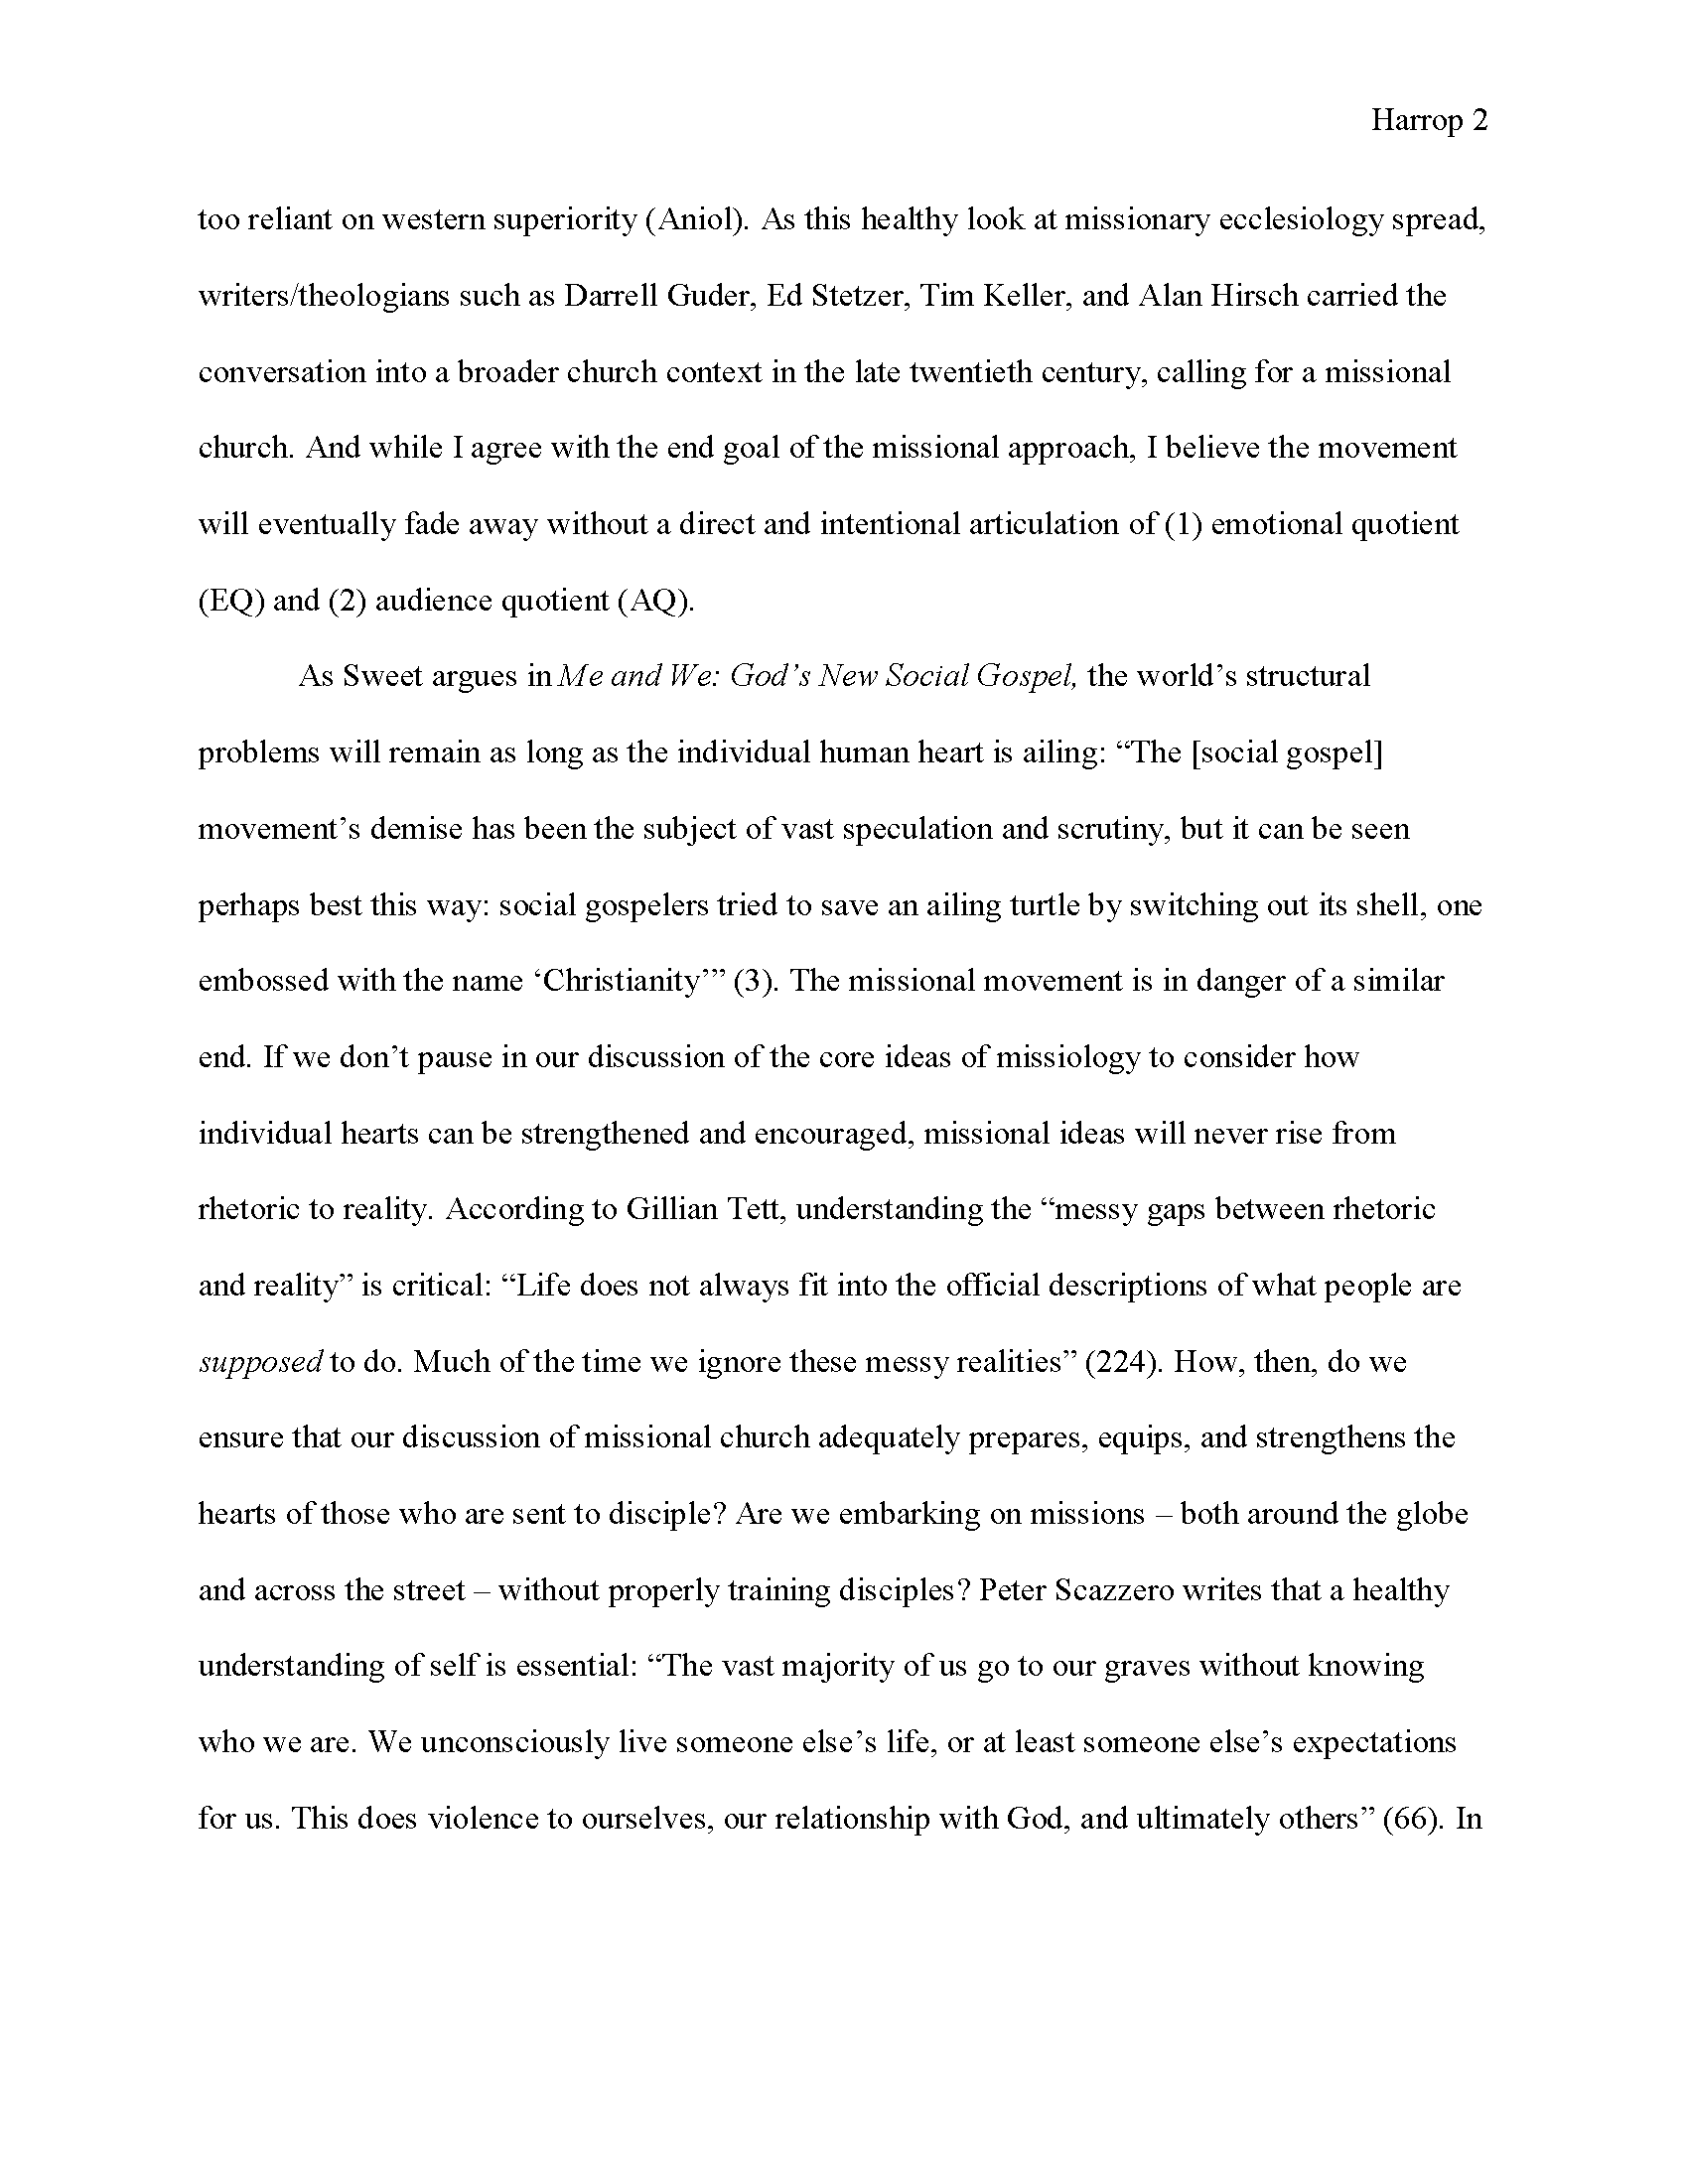 MLA Essay Page 2